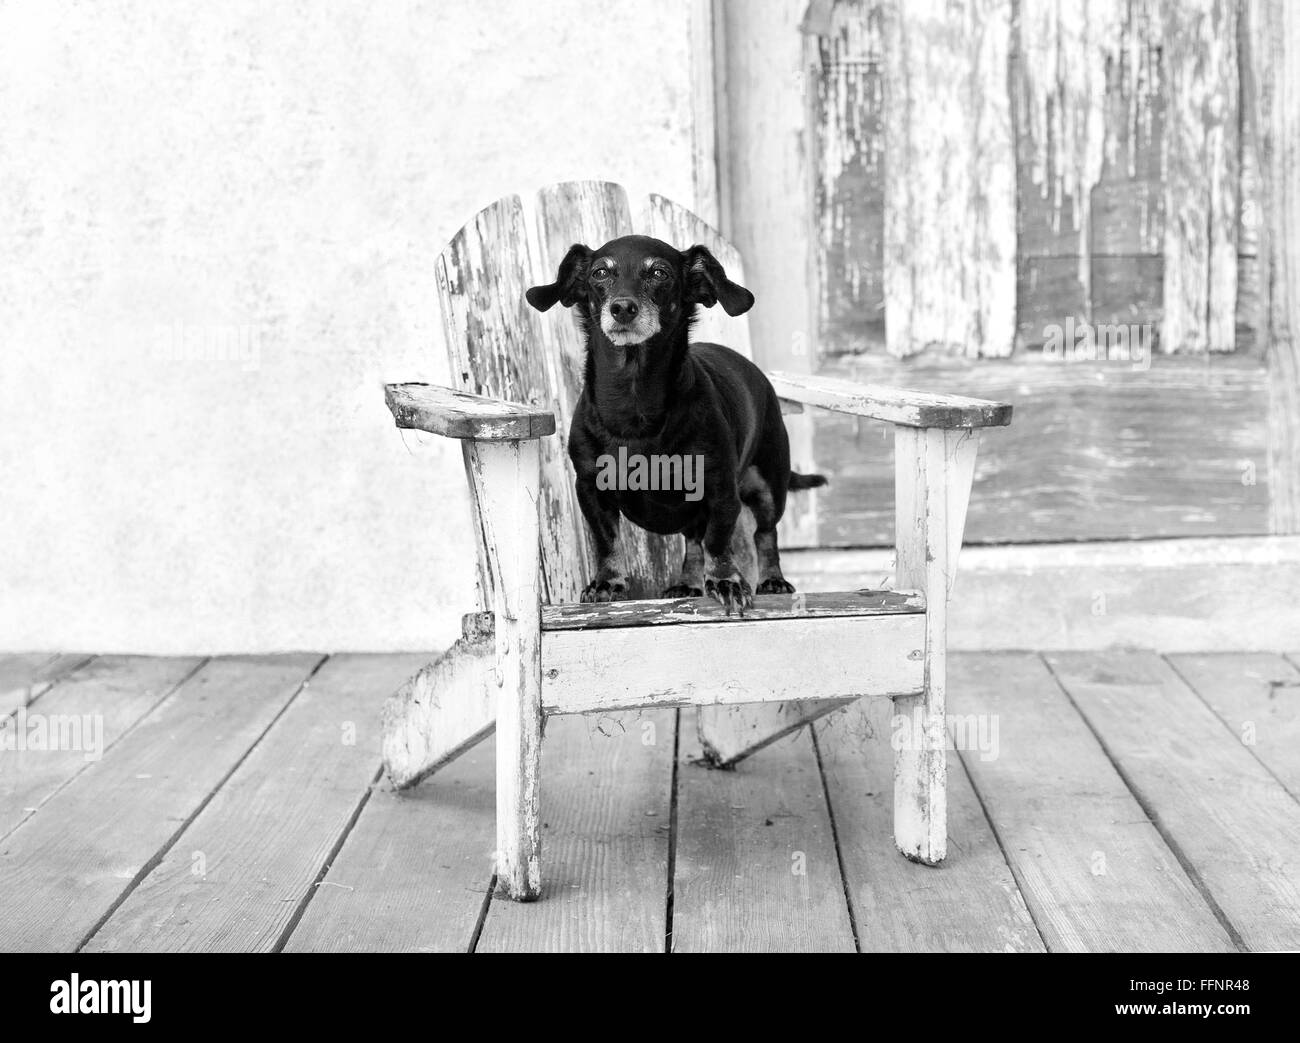 Felice fat,anziani in miniatura cane bassotto sorge su un bianco invecchiato adirondack chair di vecchio fienile con peeling paint porta. Foto Stock